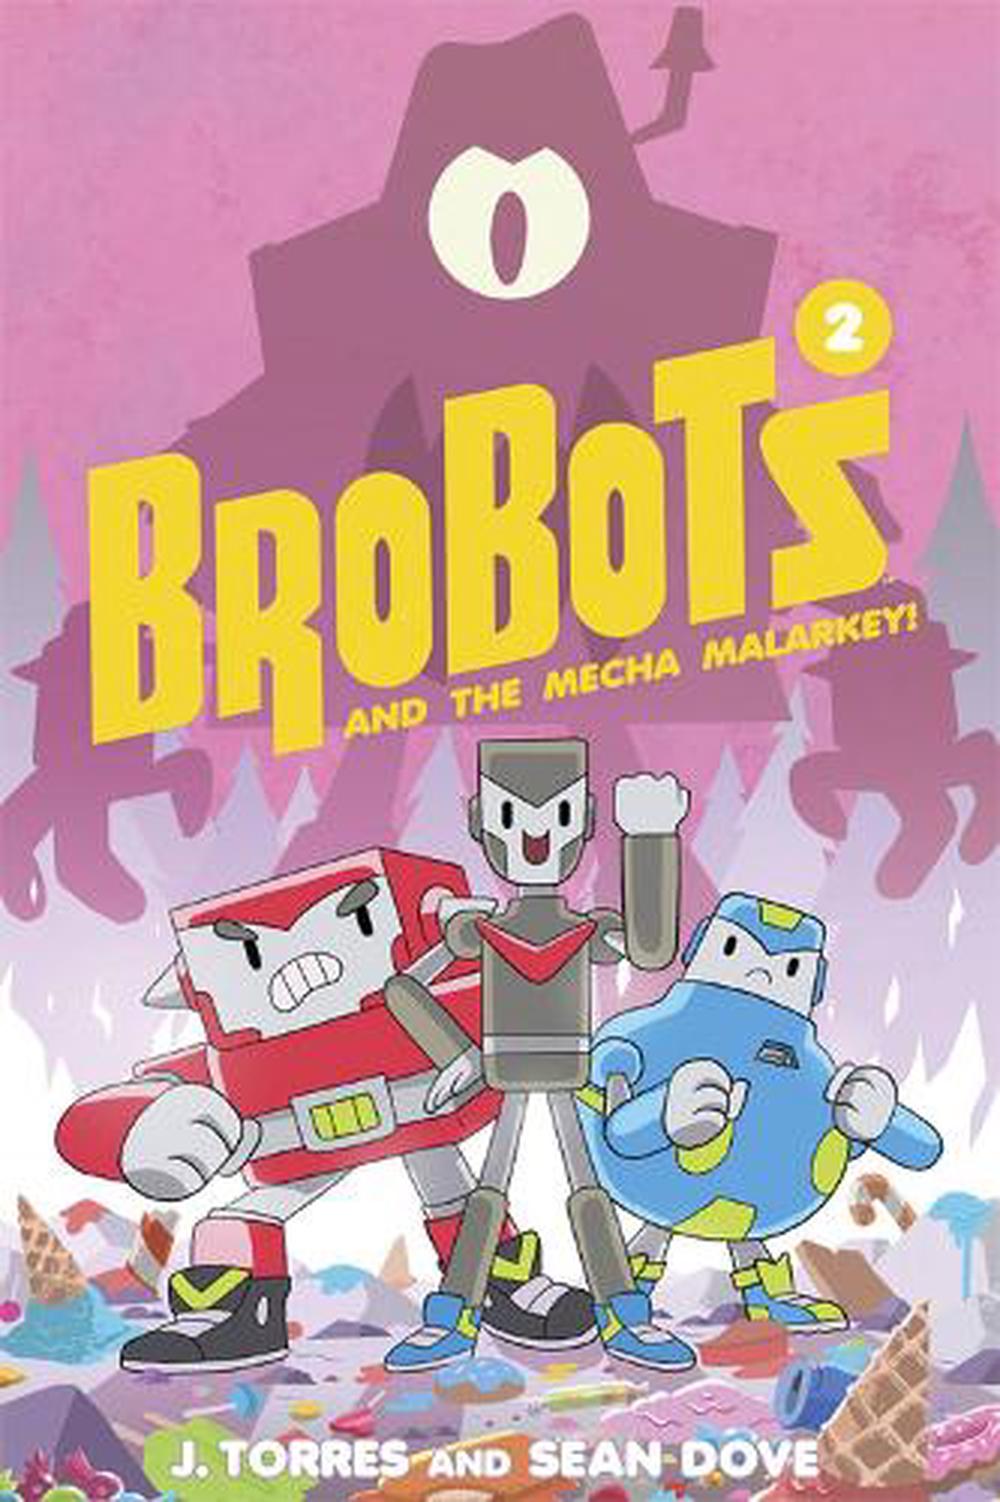 Brobots by Trevor Barton